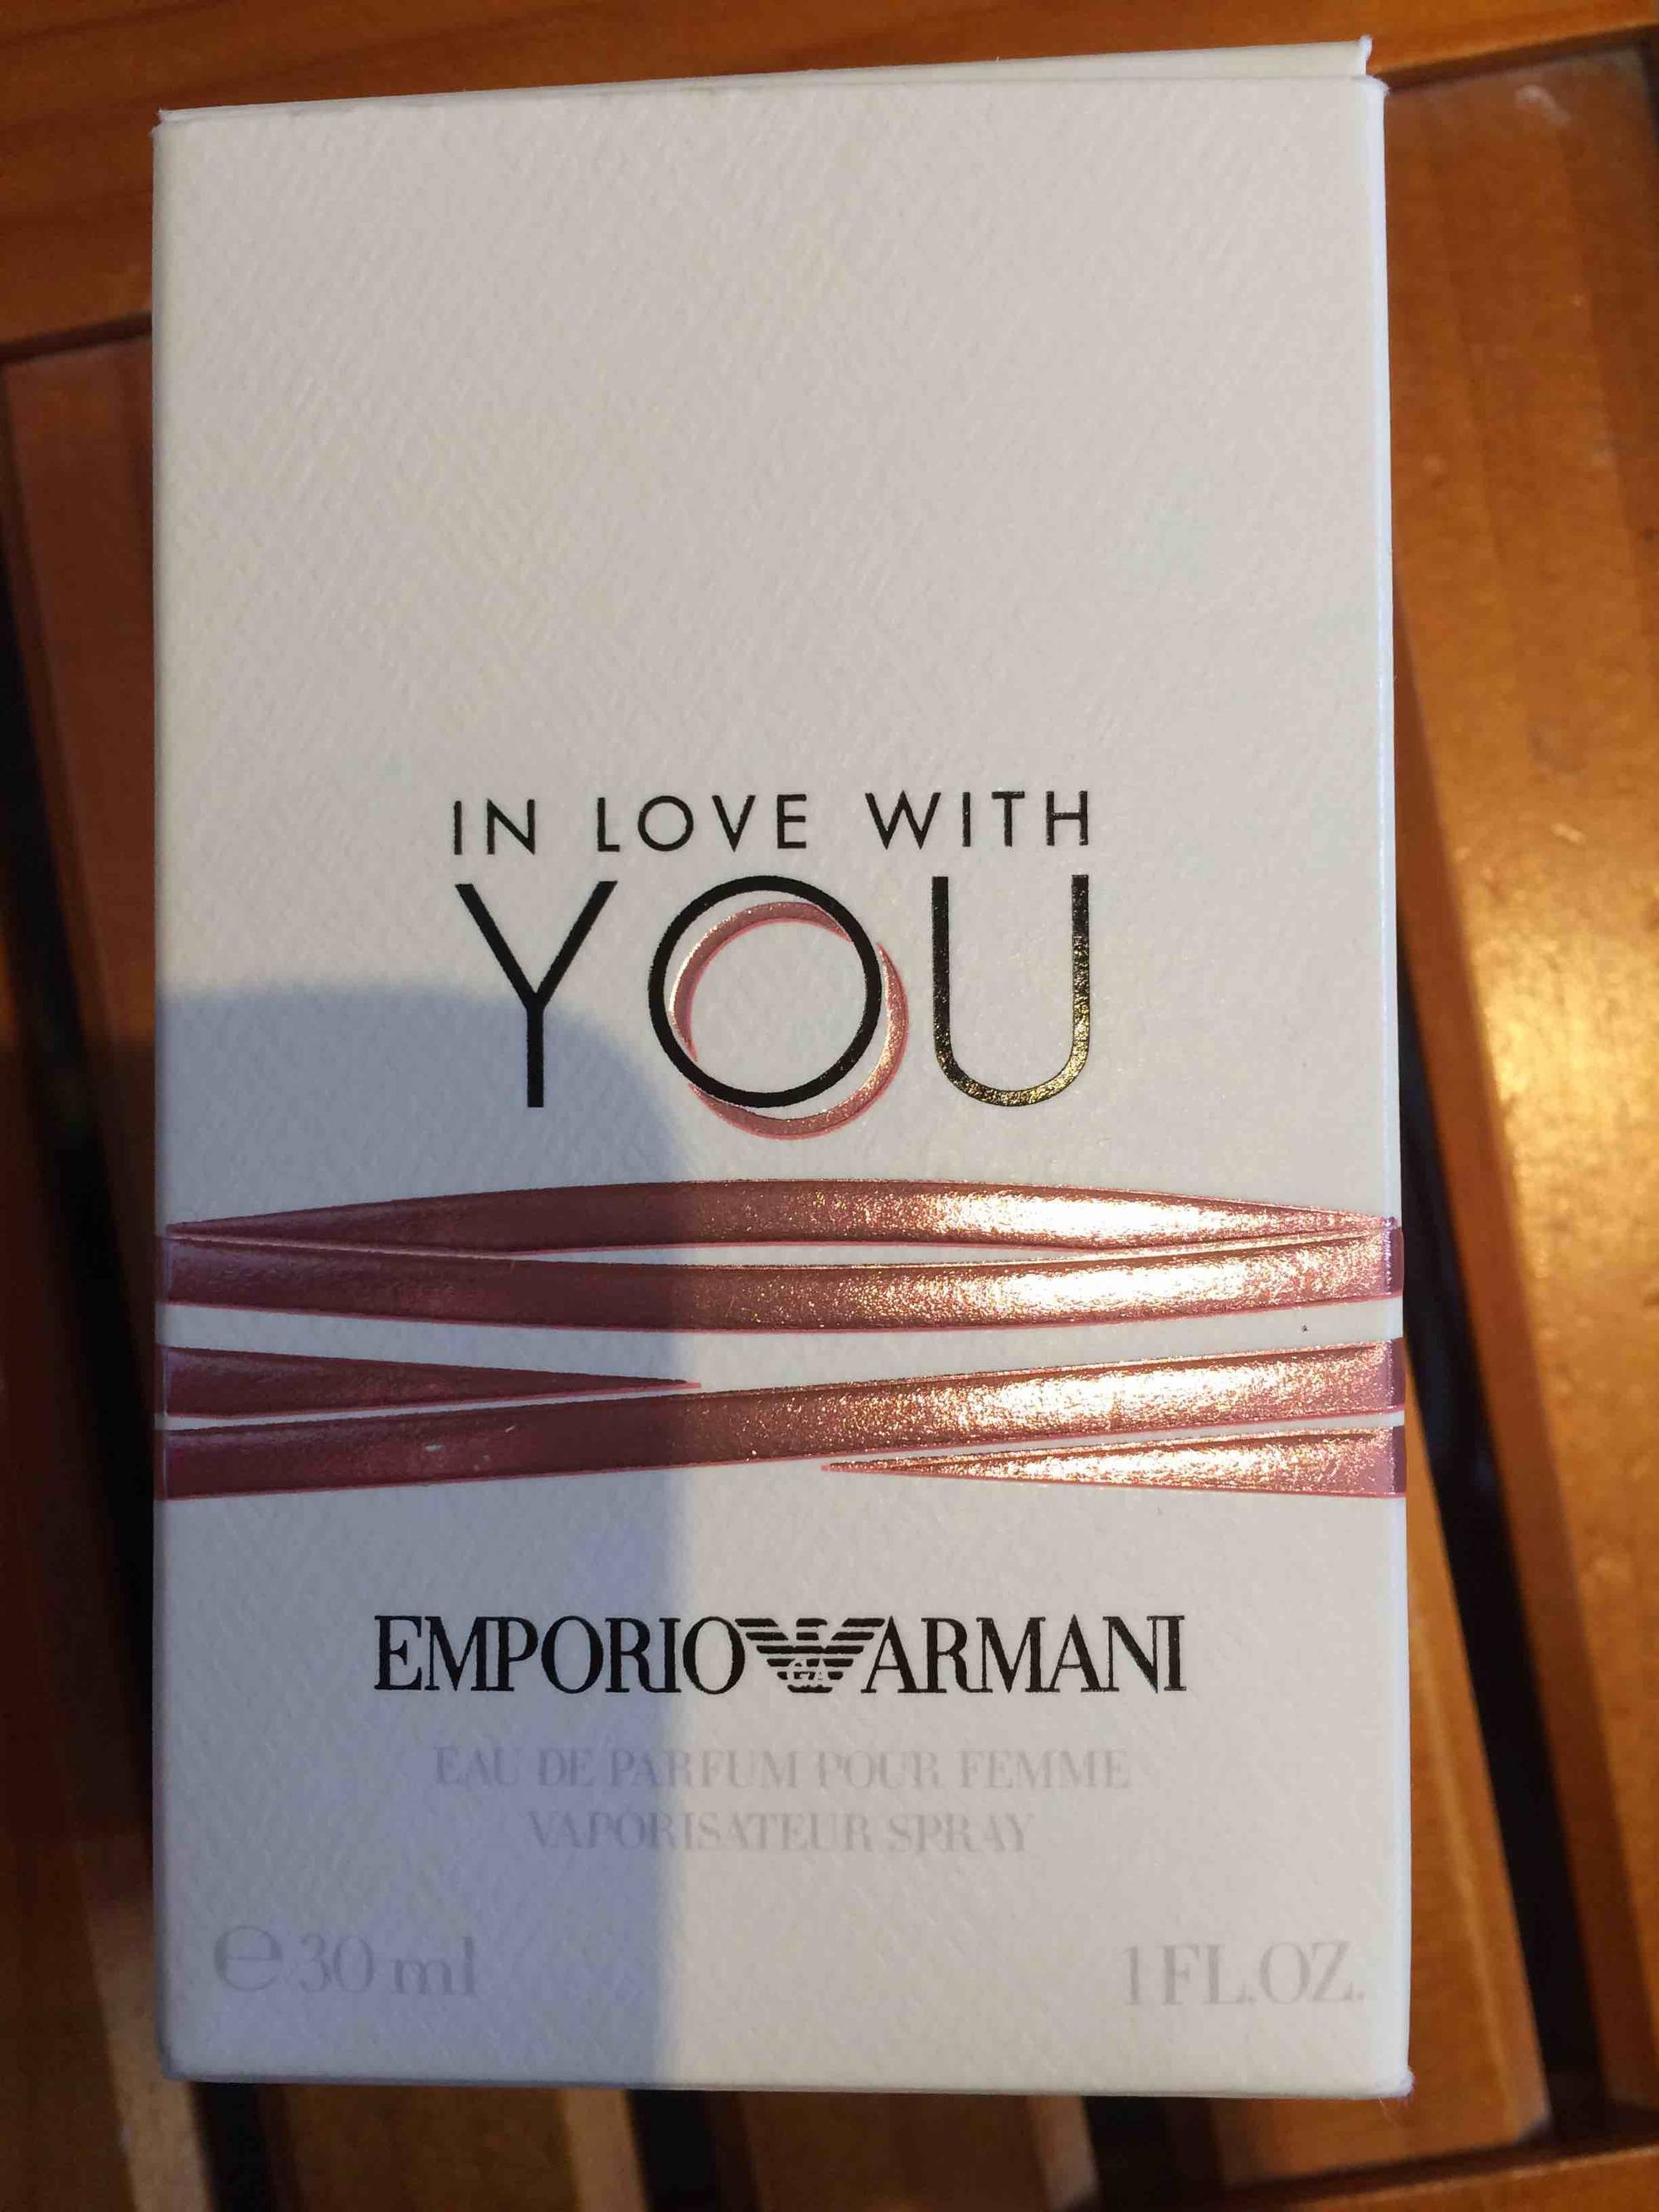 EMPORIO ARMANI - In love with you - Eau de parfum pour femme